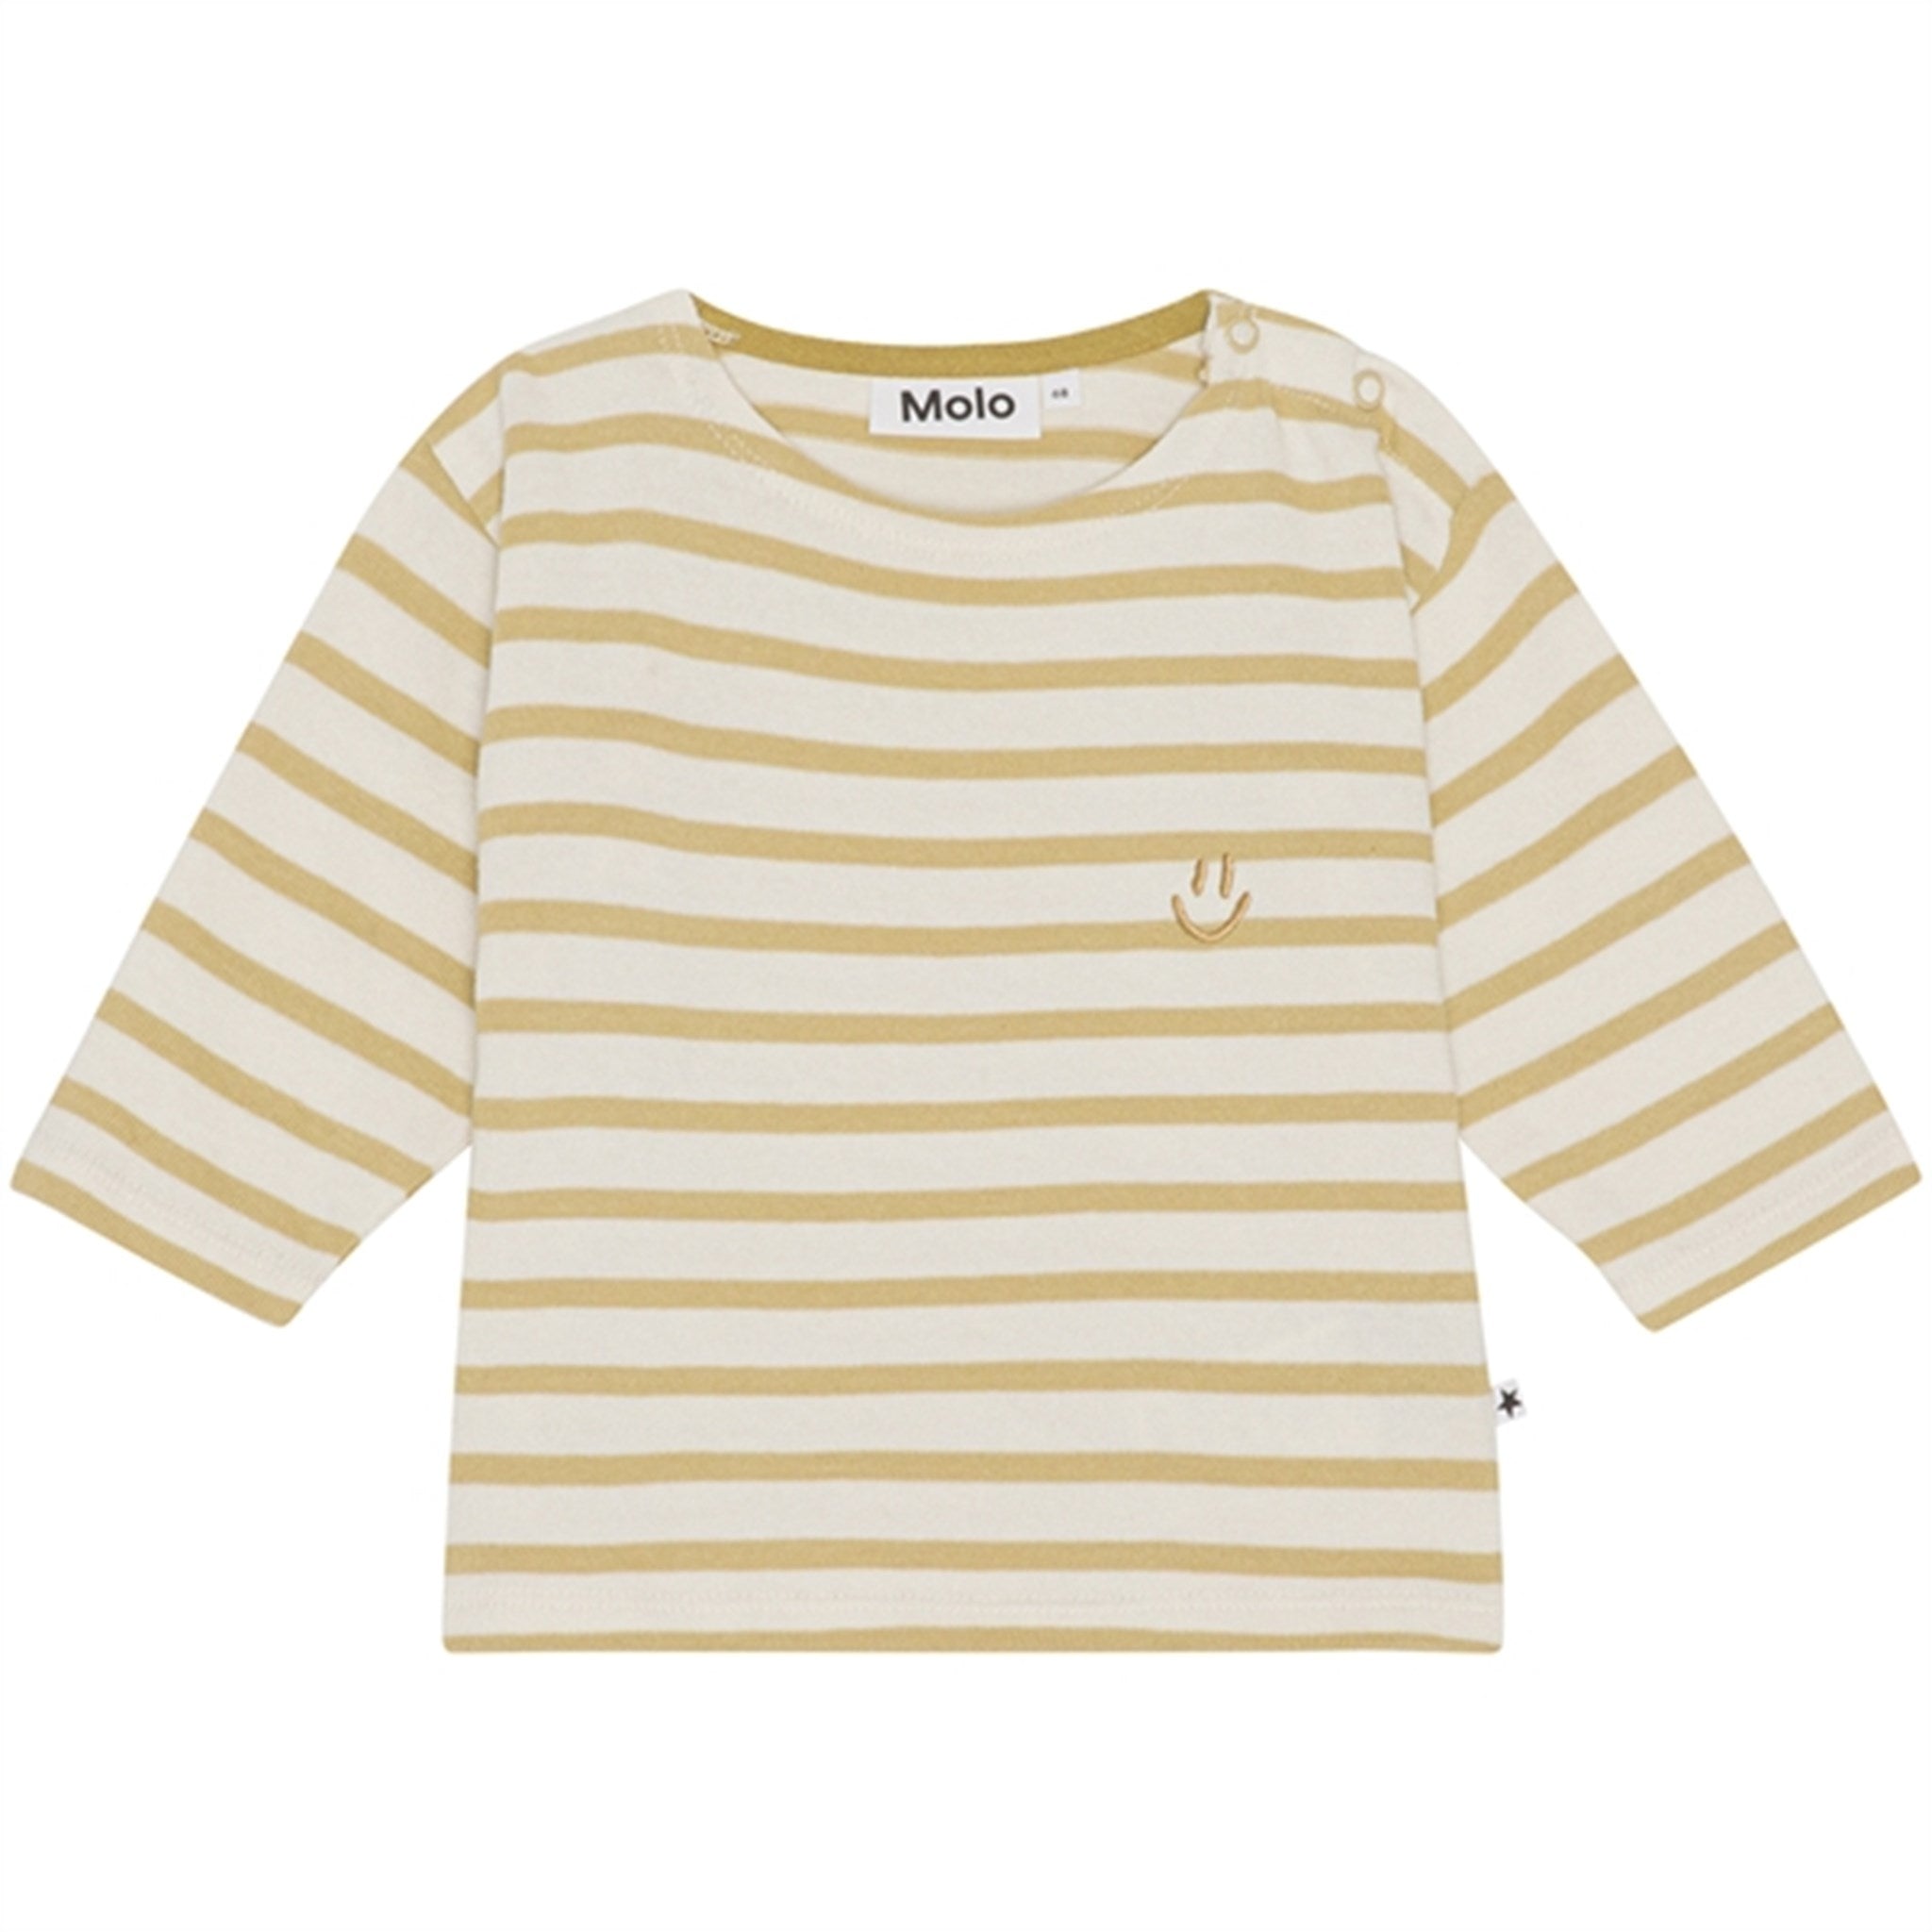 Molo Cardboard Stripe Edarko Shirt